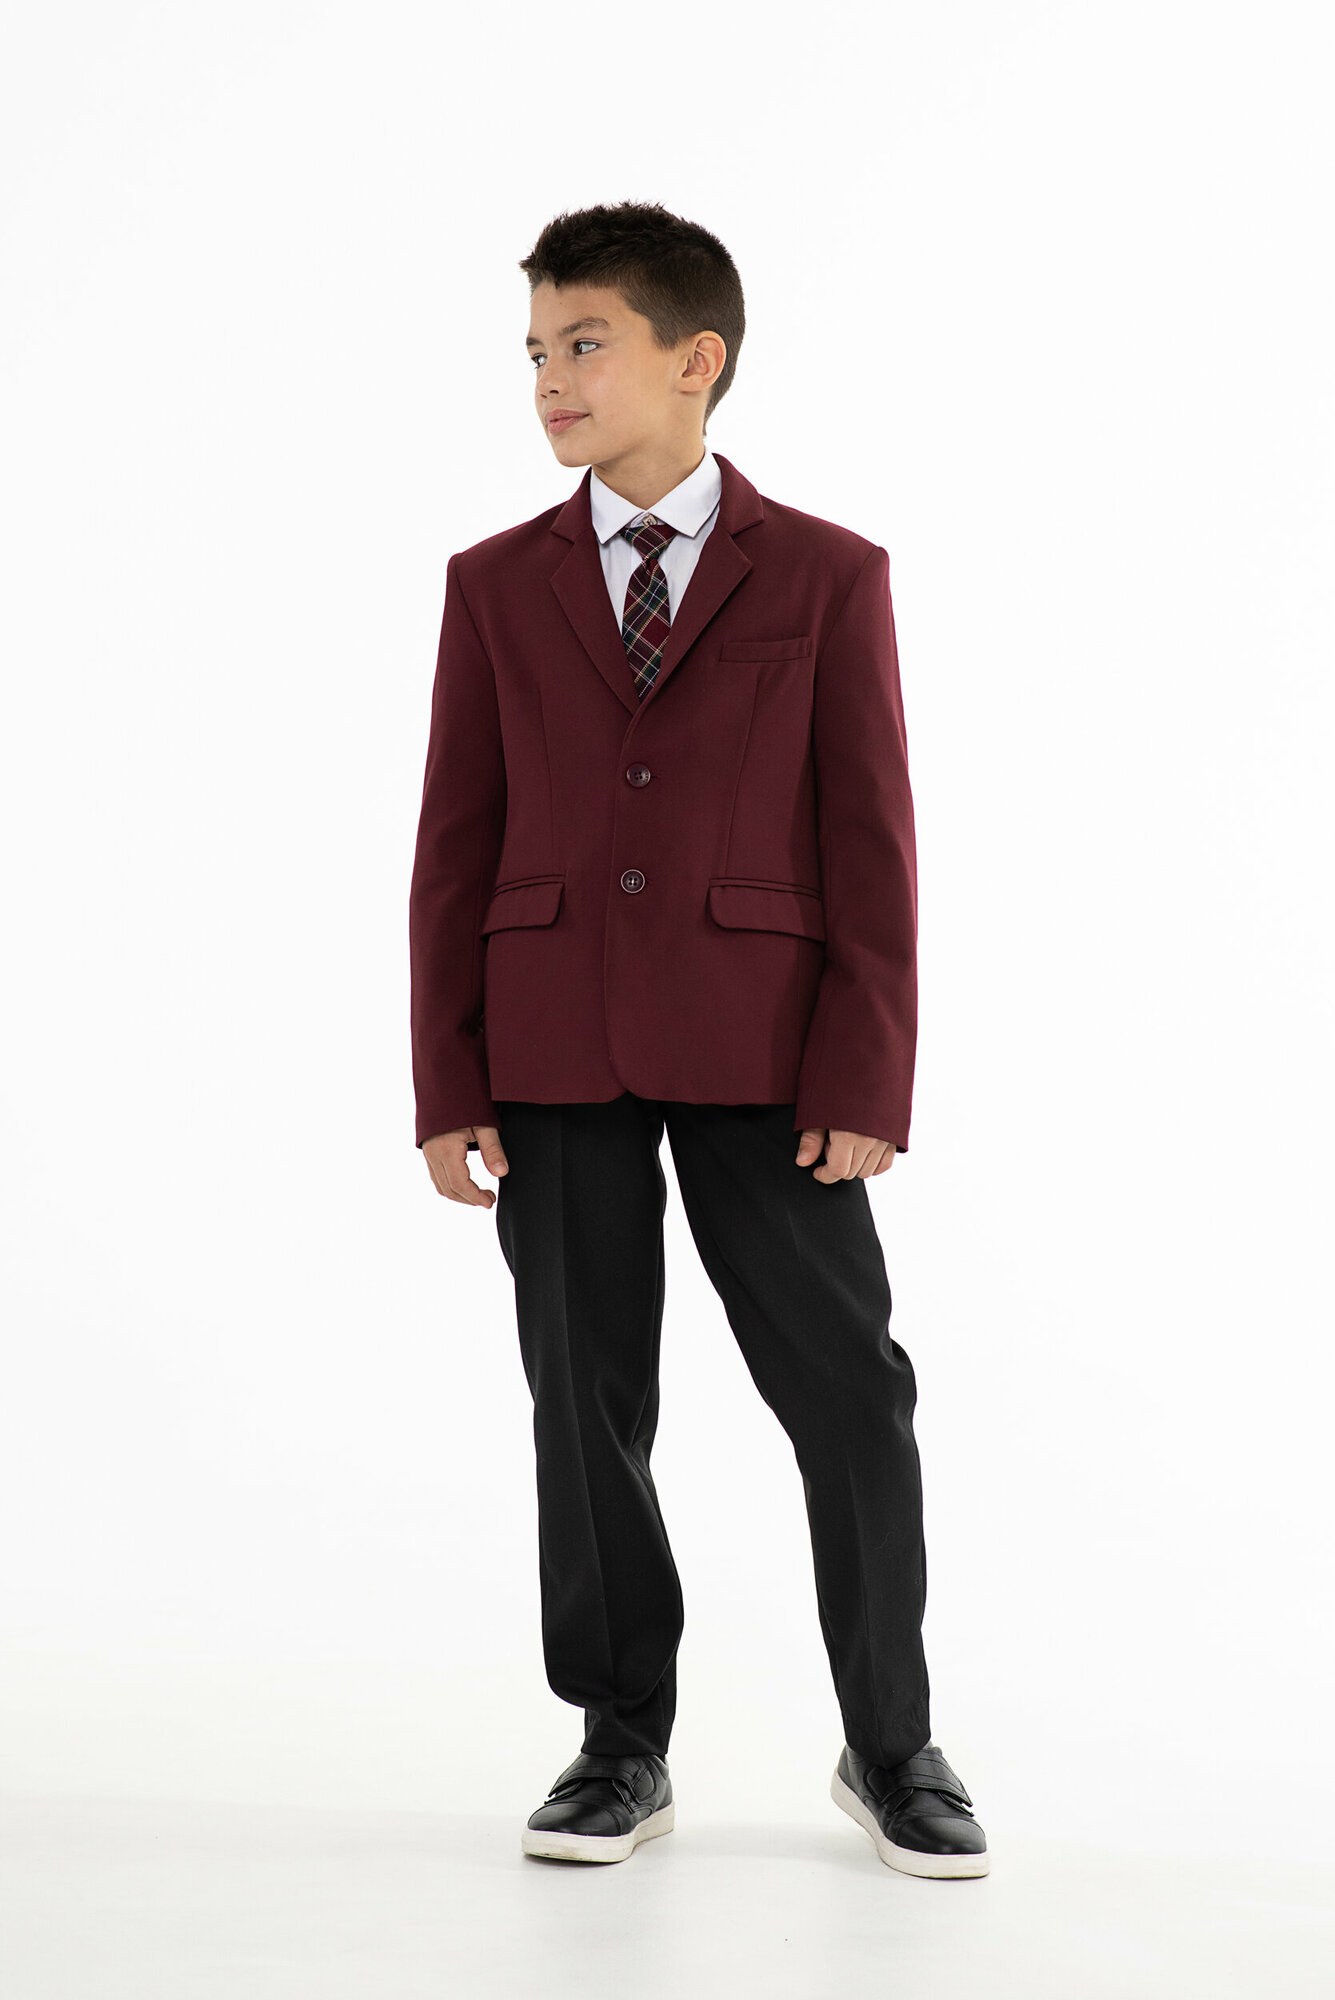 Школьный пиджак для мальчика Инфанта модель 805091